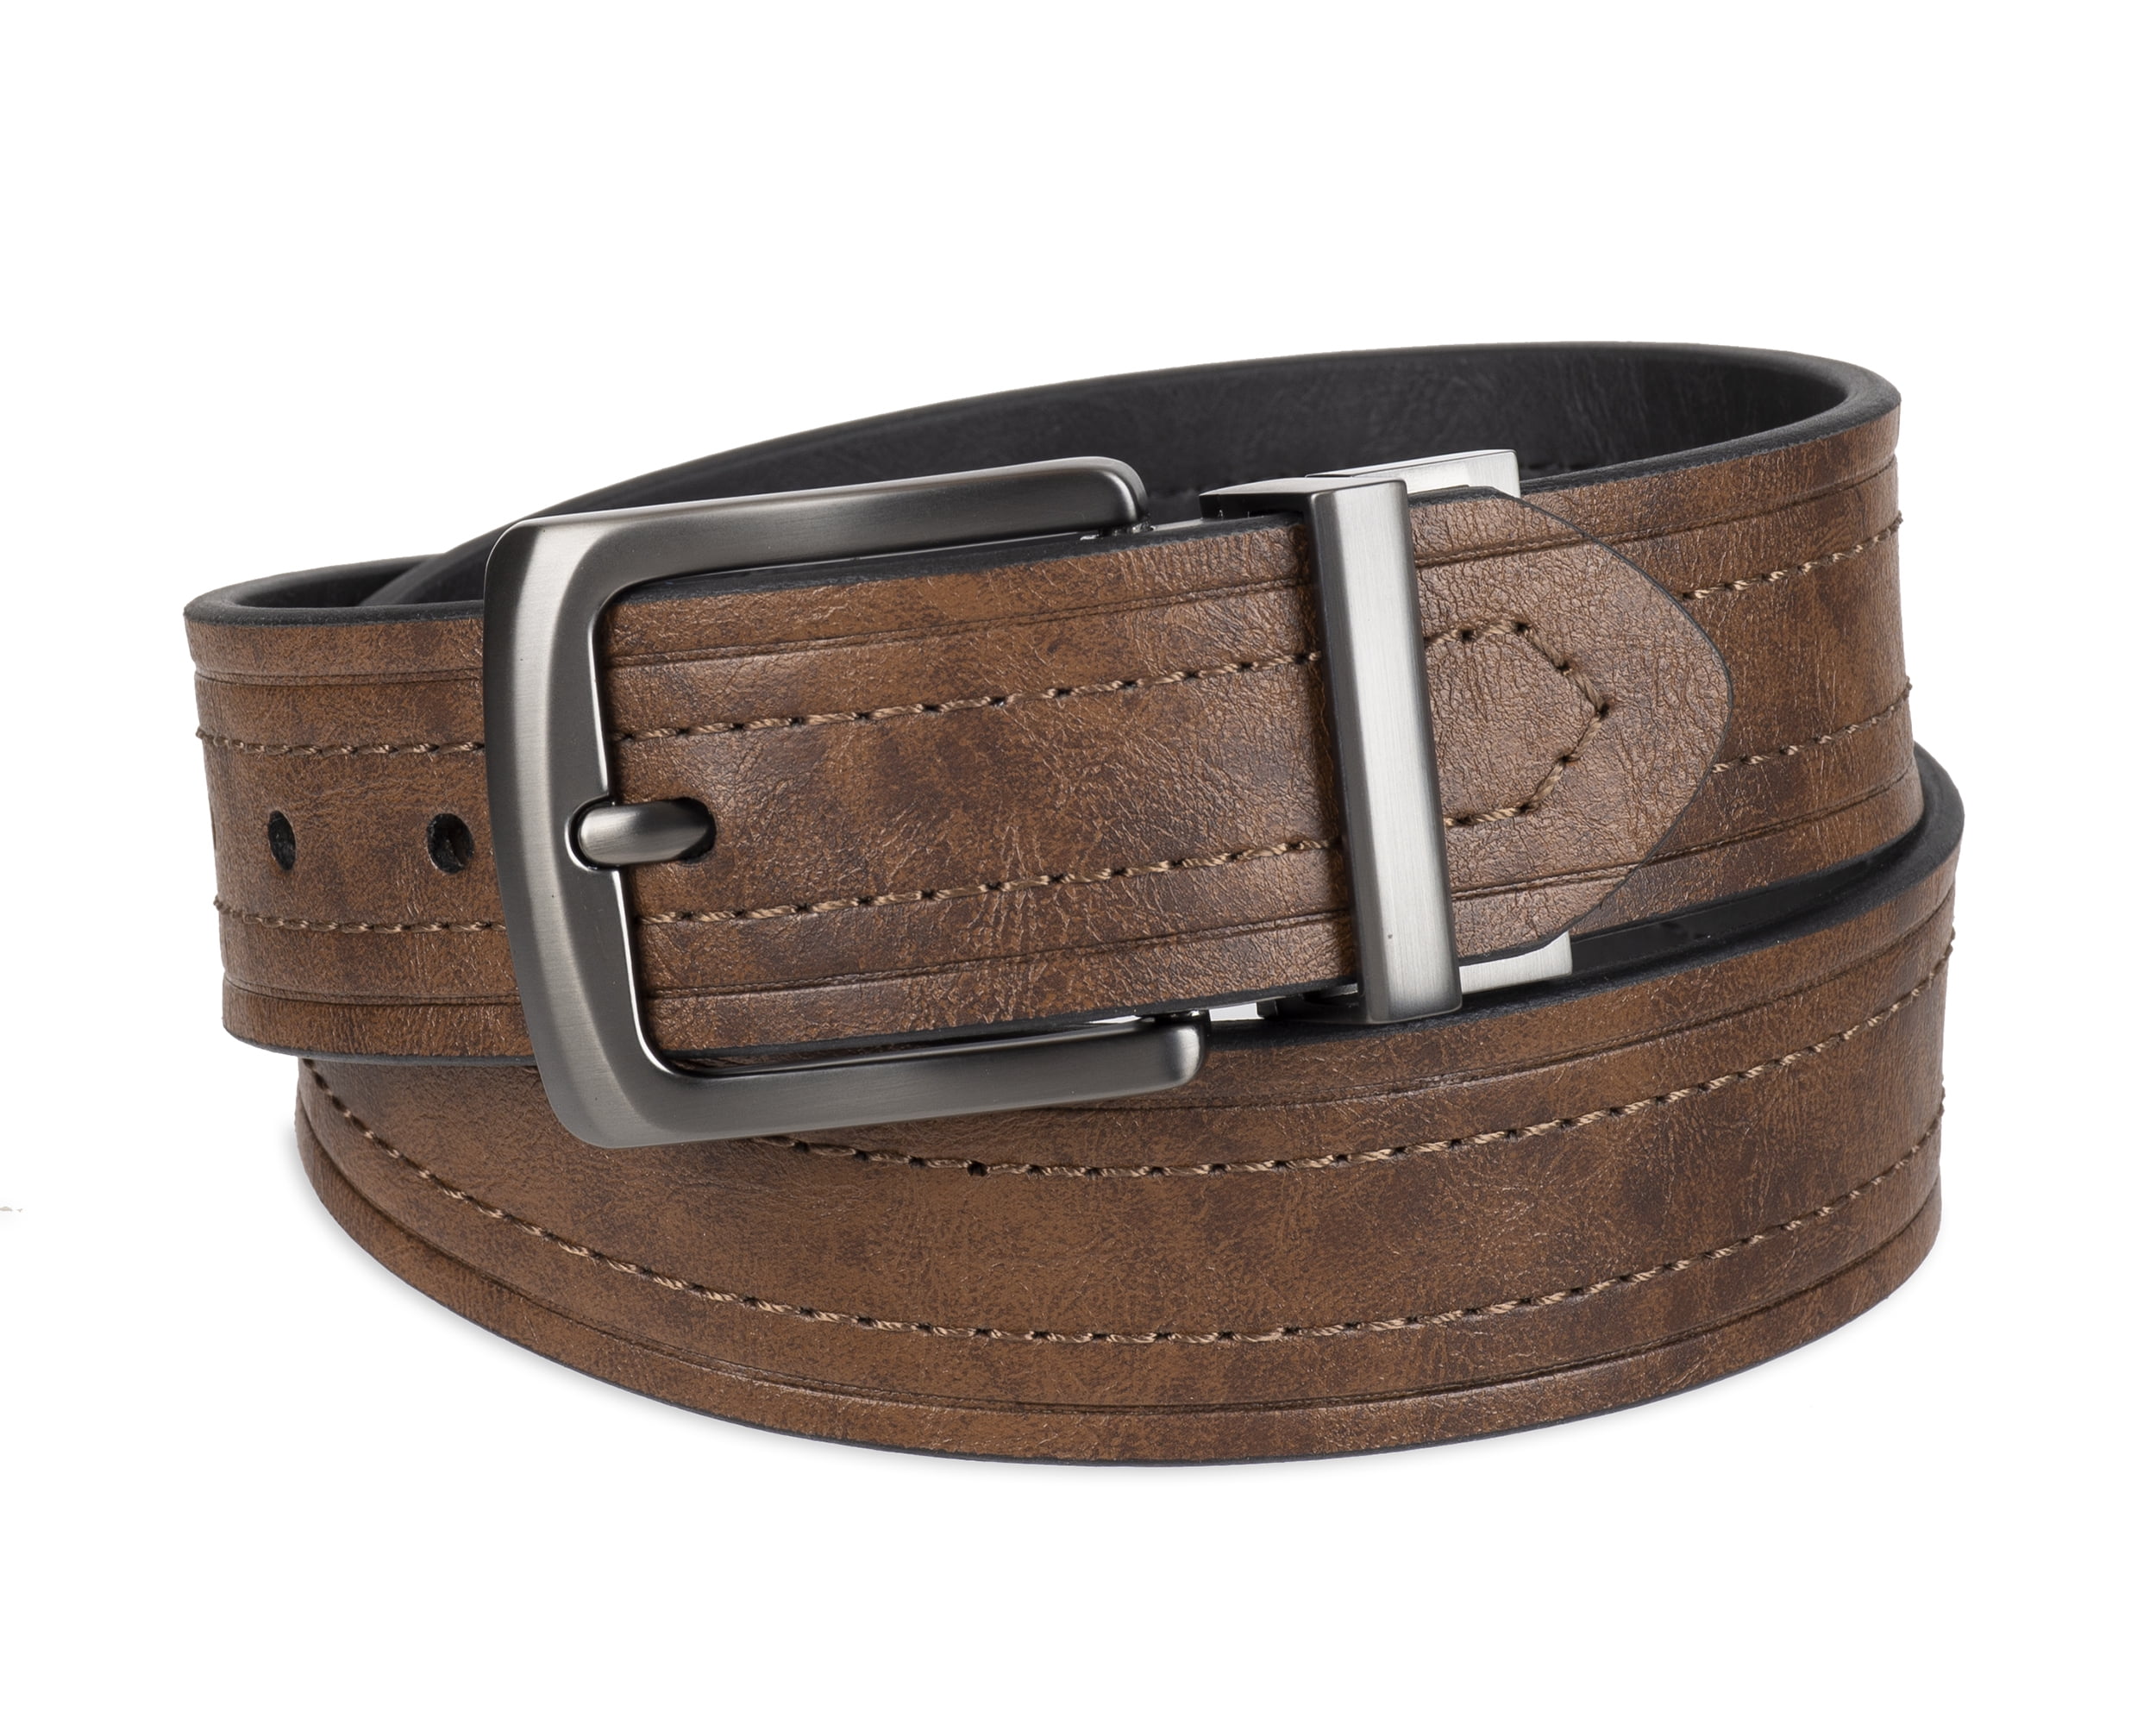 Buy Black & Brown Leather Reversible Belt for Men Online At Best